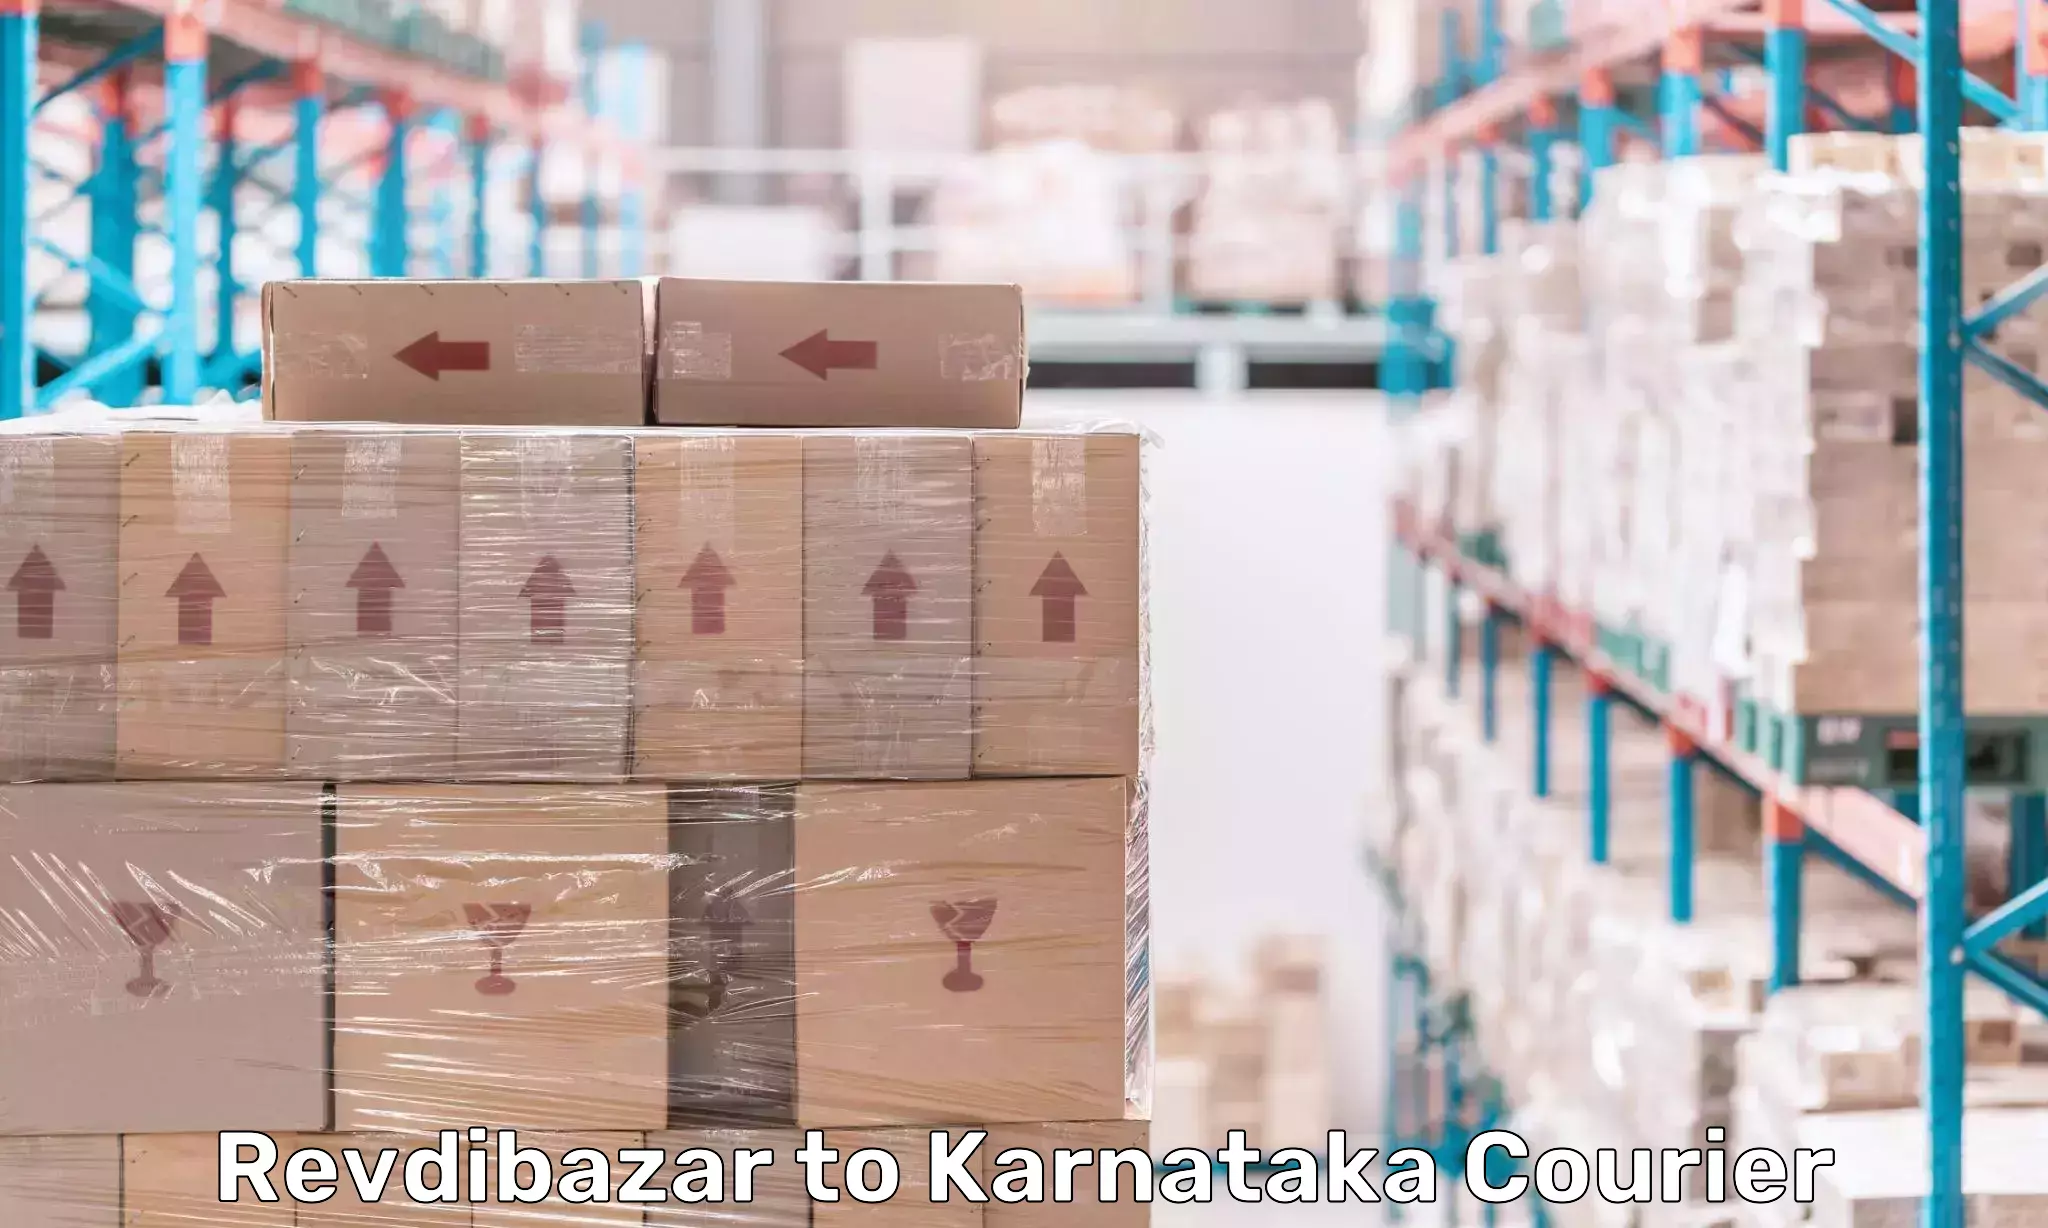 Cargo delivery service Revdibazar to Karnataka